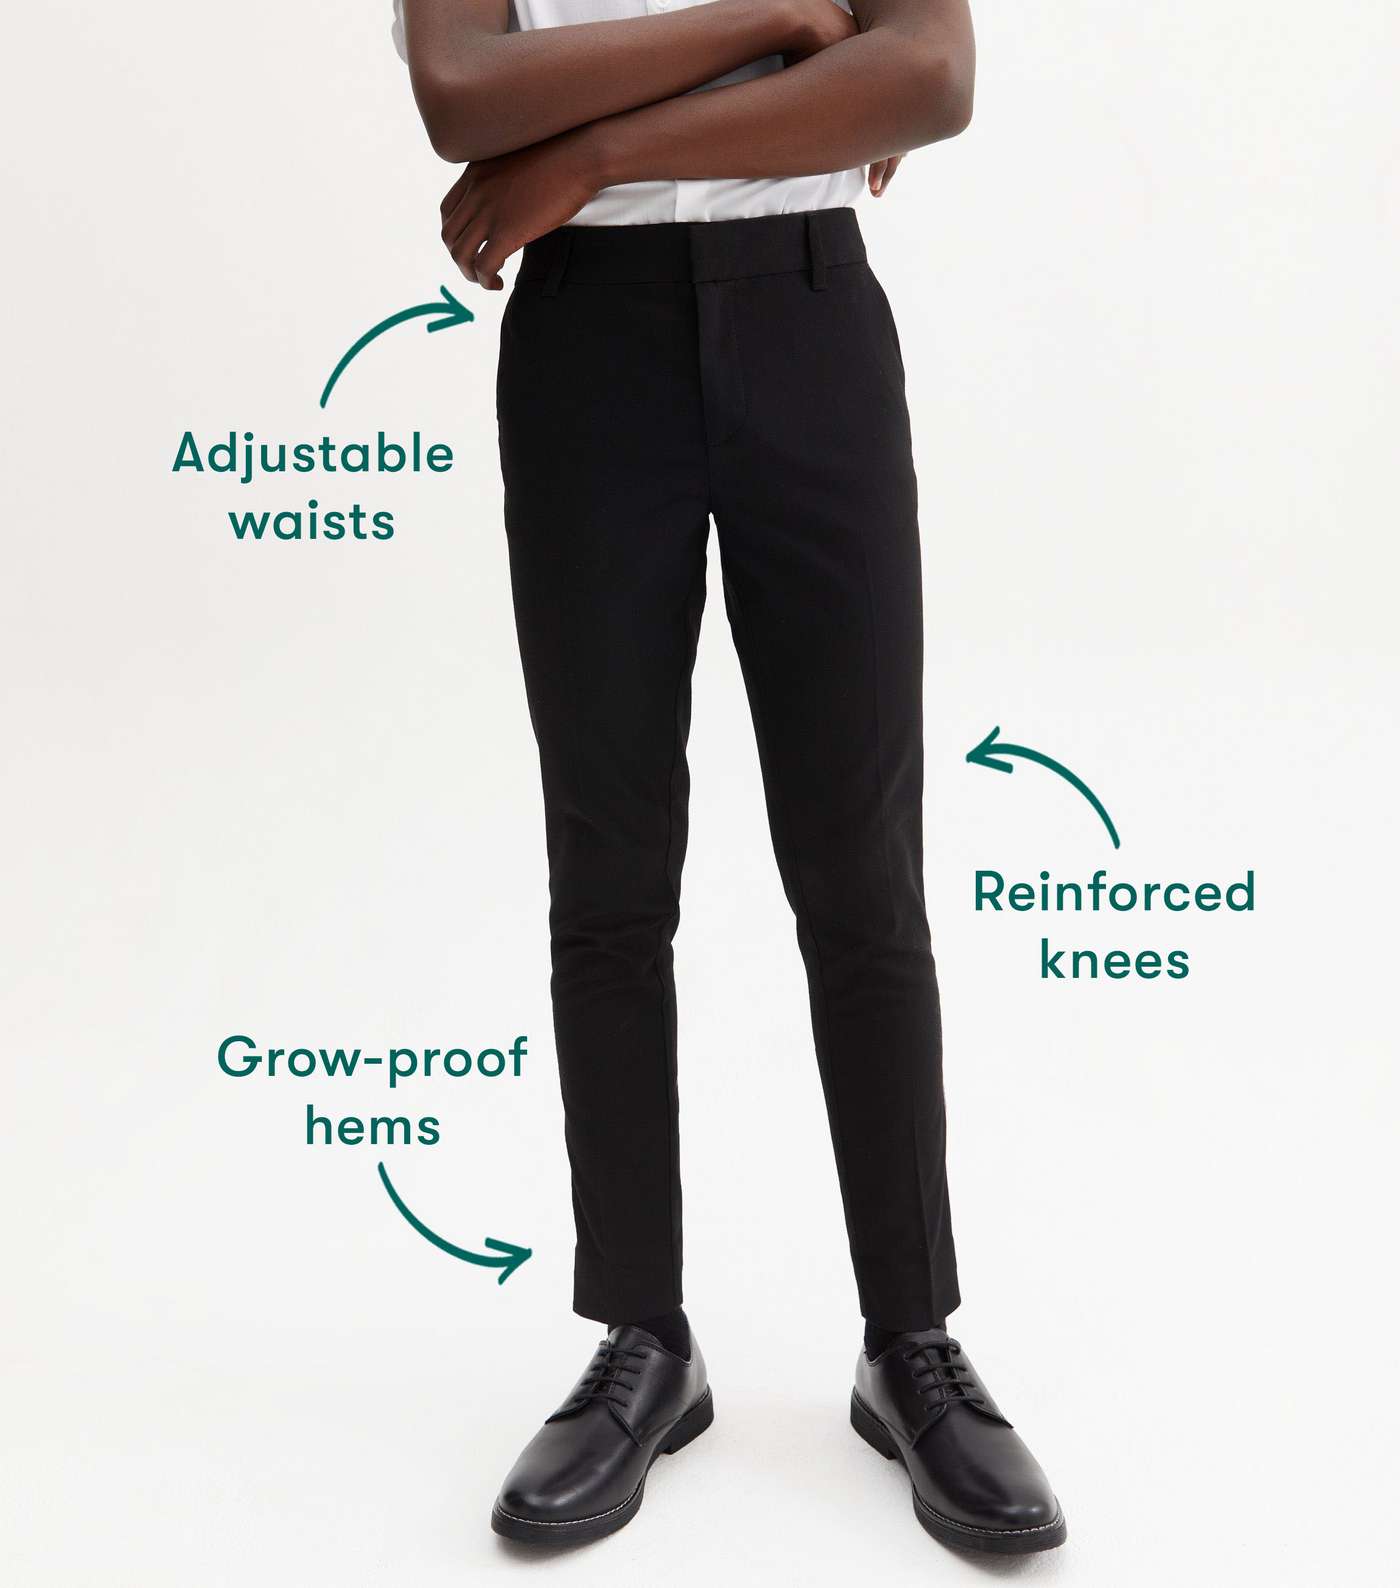 Boys Black Adjustable Waist Skinny School Trousers Image 3